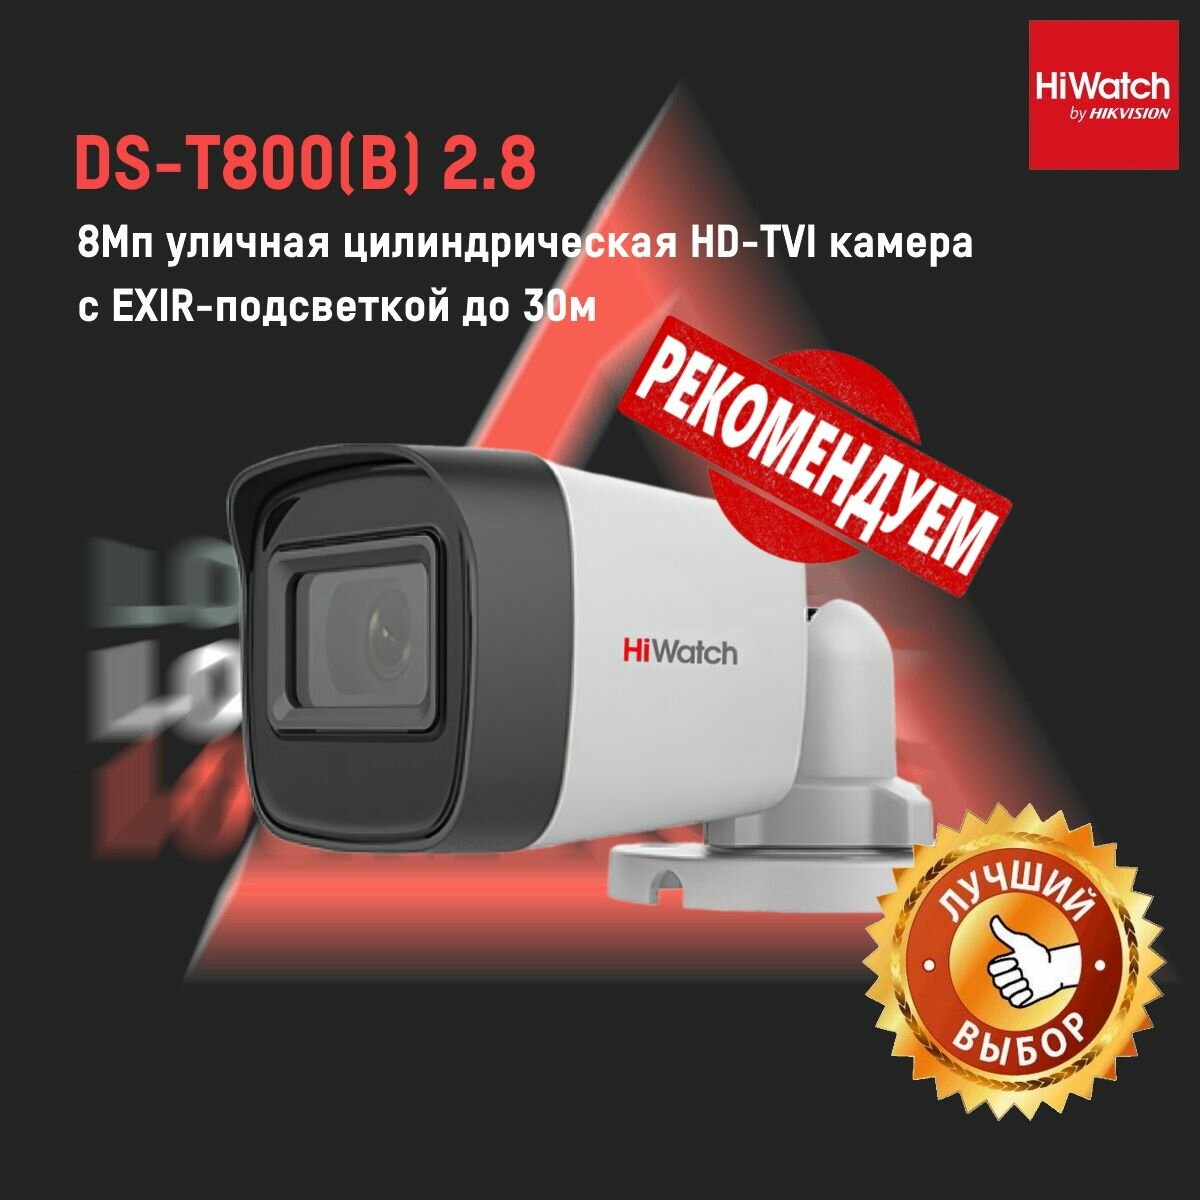 DS-T800(B) (2.8 mm) Hiwatch HD-TVI видеокамера